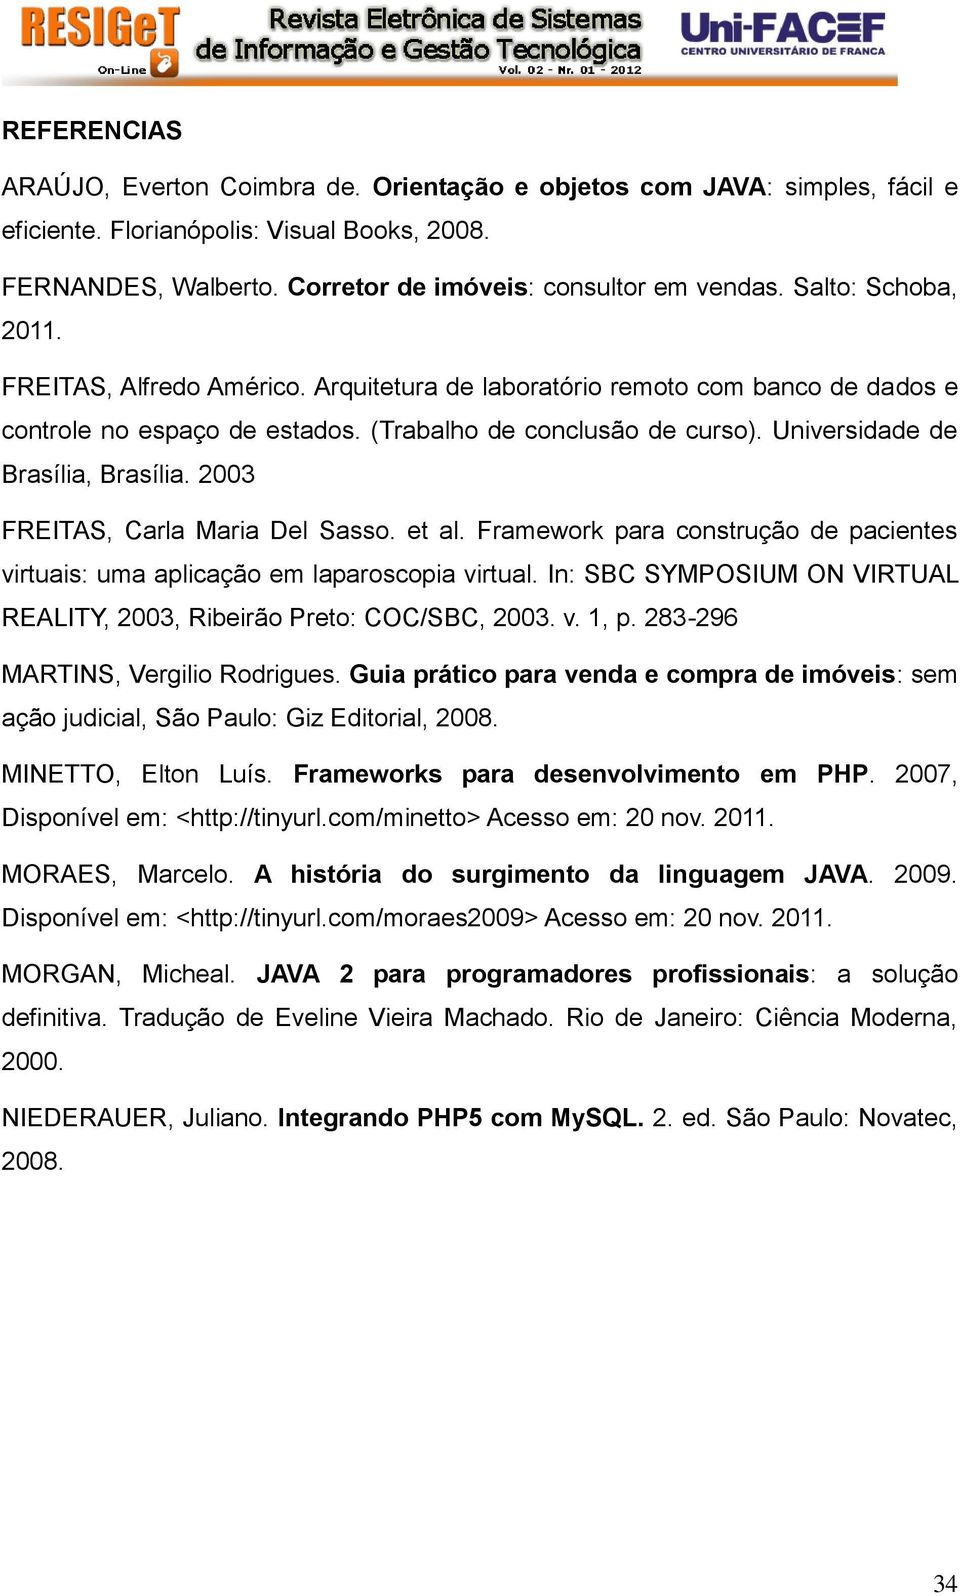 Universidade de Brasília, Brasília. 2003 FREITAS, Carla Maria Del Sasso. et al. Framework para construção de pacientes virtuais: uma aplicação em laparoscopia virtual.